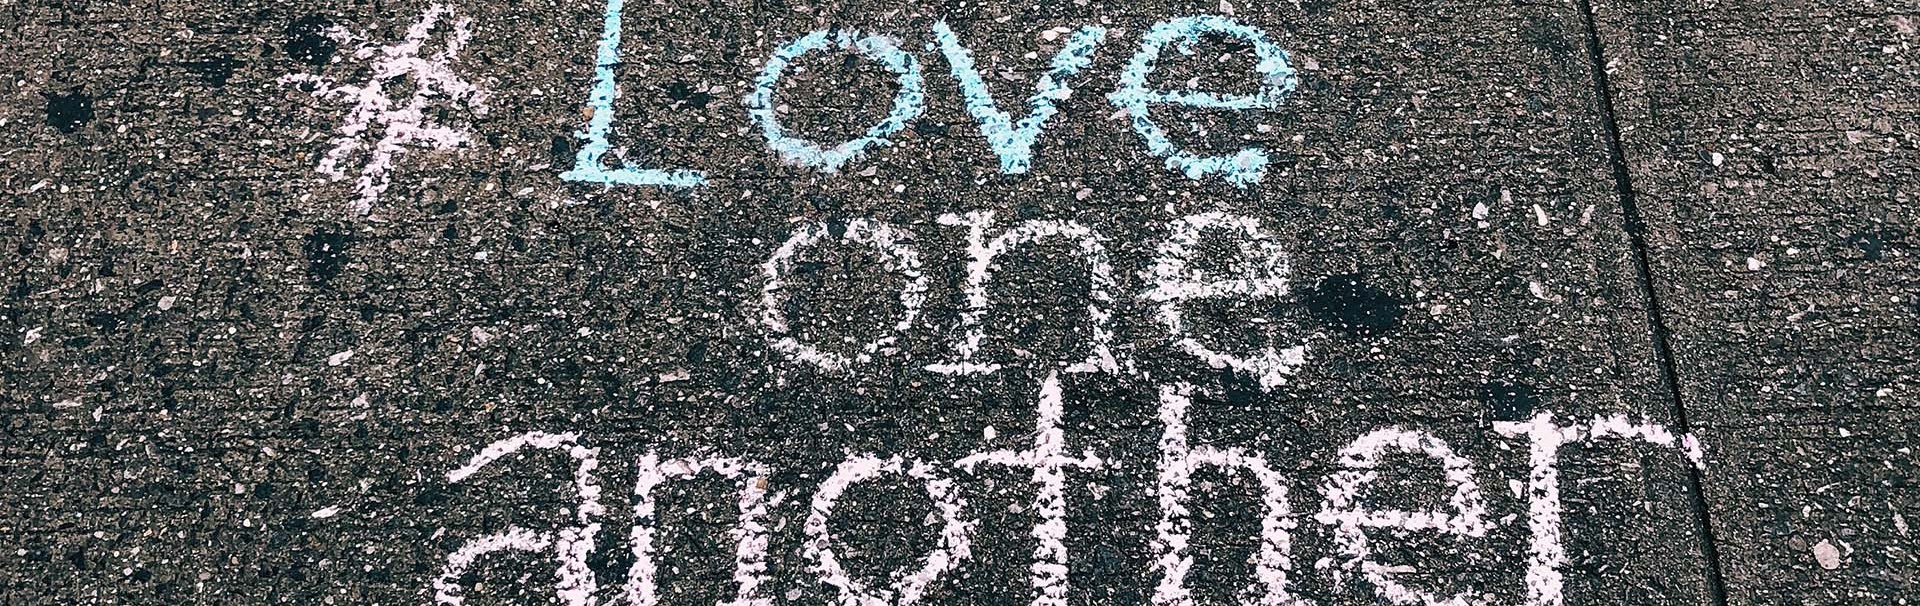 #Love one another steht mit bunter Kreide auf graue Gehwegplatten geschrieben - SCHOKOLADENSEITE.net übernimmt Verantwortung.